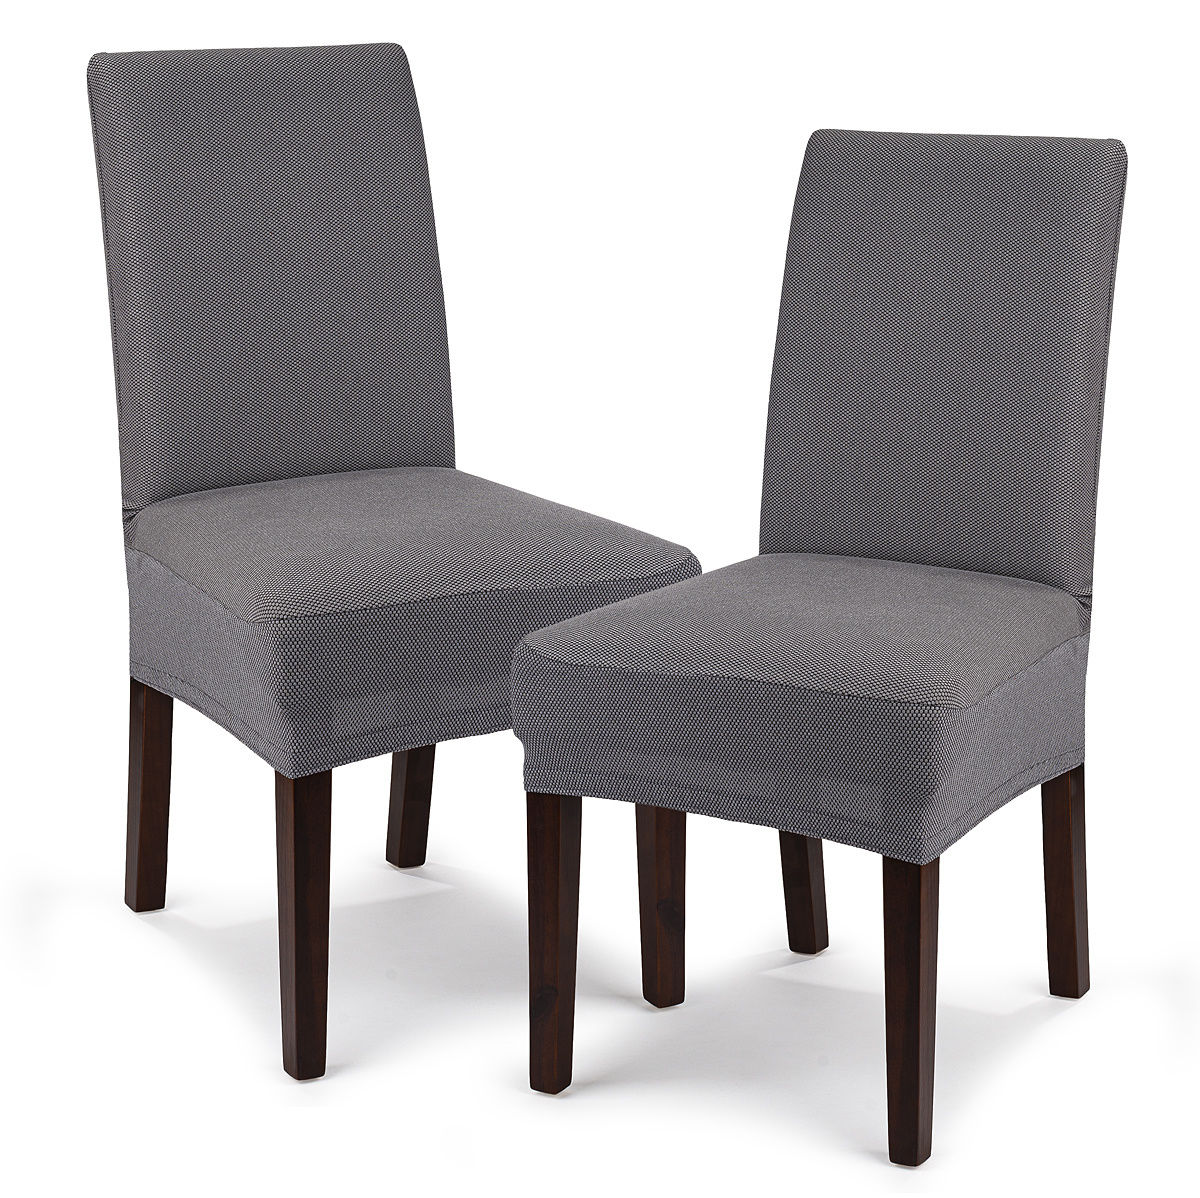 4Home Multielastyczny pokrowiec na krzesło Comfort, szary, 40 - 50 cm, zestaw 2 szt.